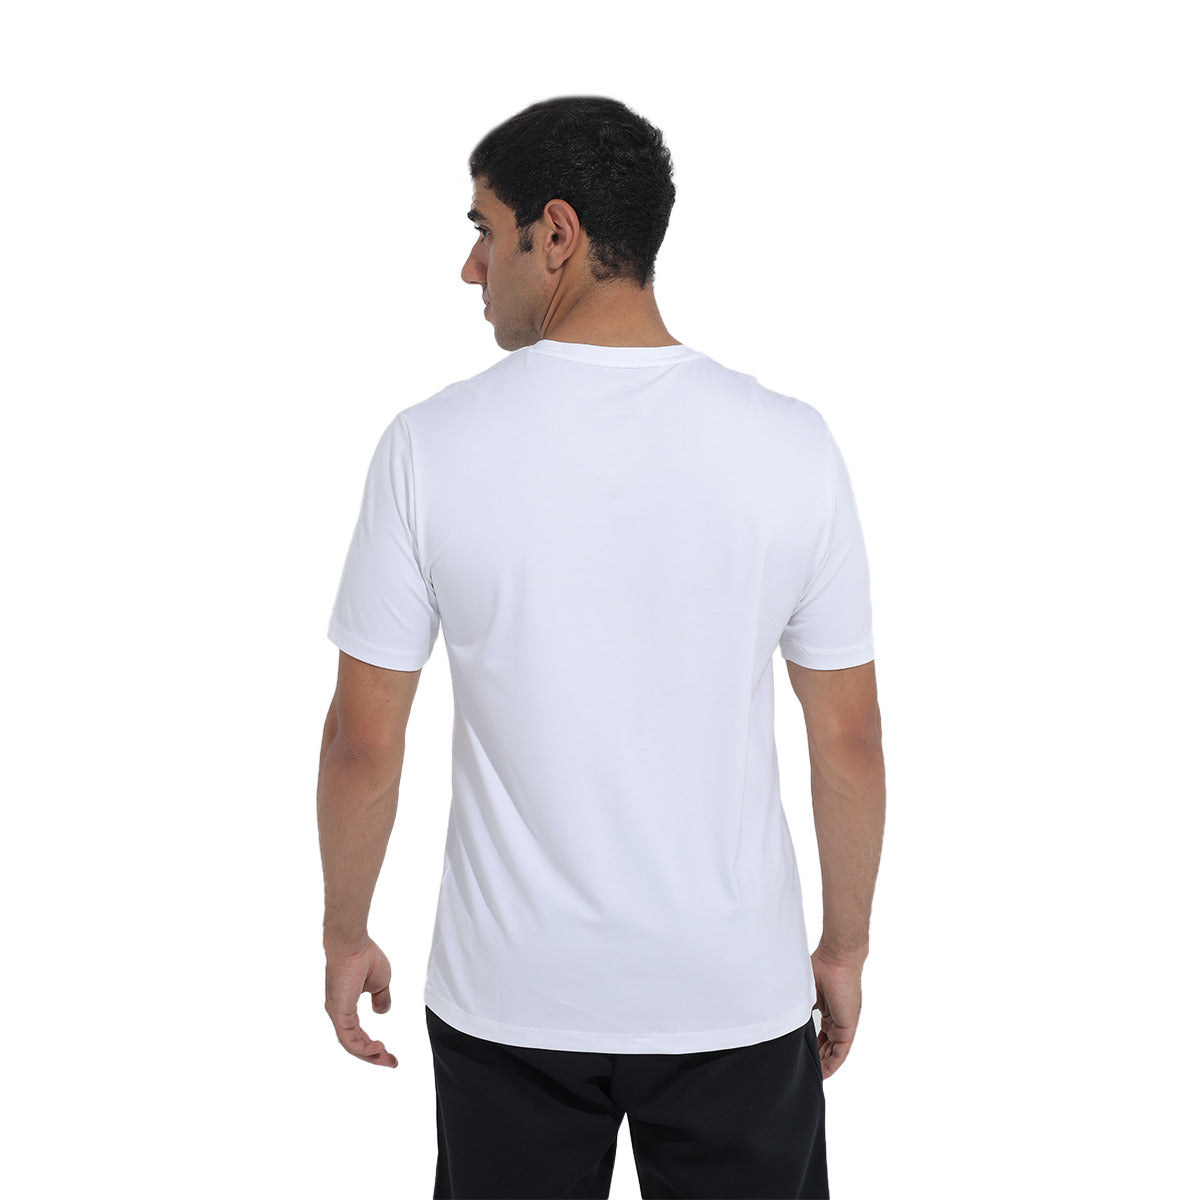 Anta Cross Training T-Shirt For Men, White